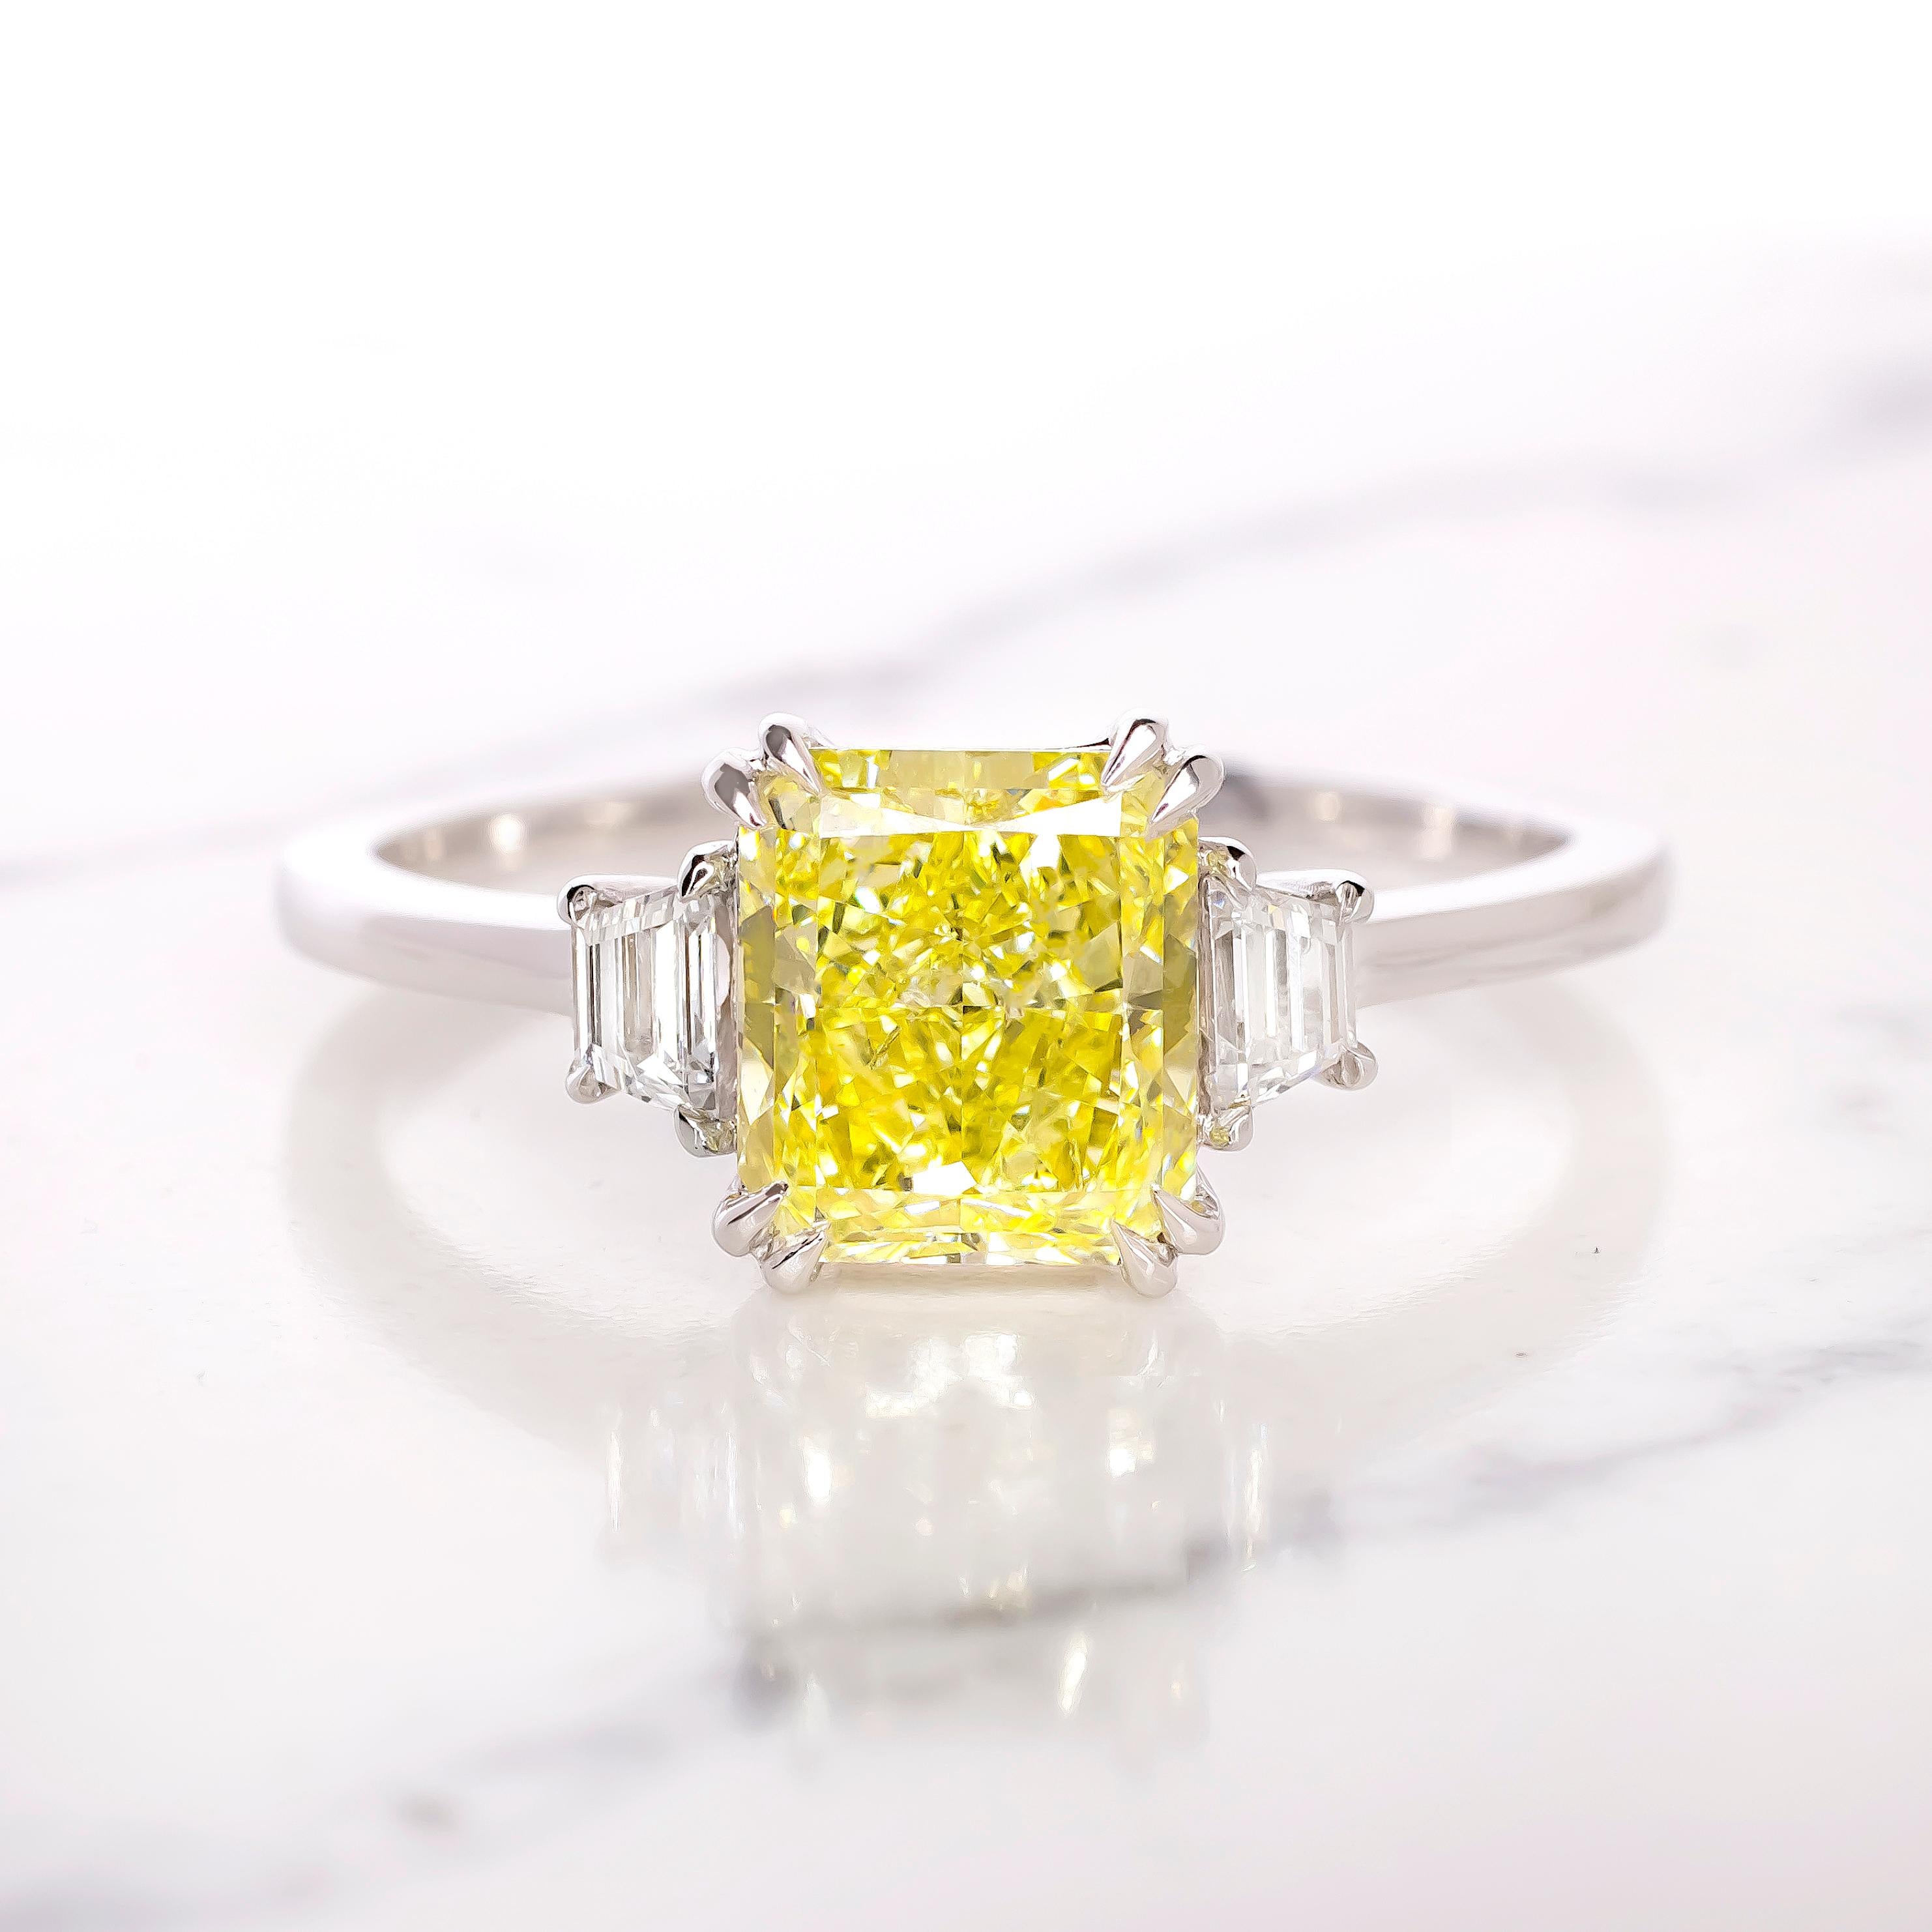 Cette bague exquise d'Antinori Di Sanpietro, une célèbre marque italienne de haute joaillerie, est ornée d'un captivant diamant coloré de taille coussin qui attire l'attention. 

La pierre centrale est un remarquable diamant jaune fantaisie de 1,38